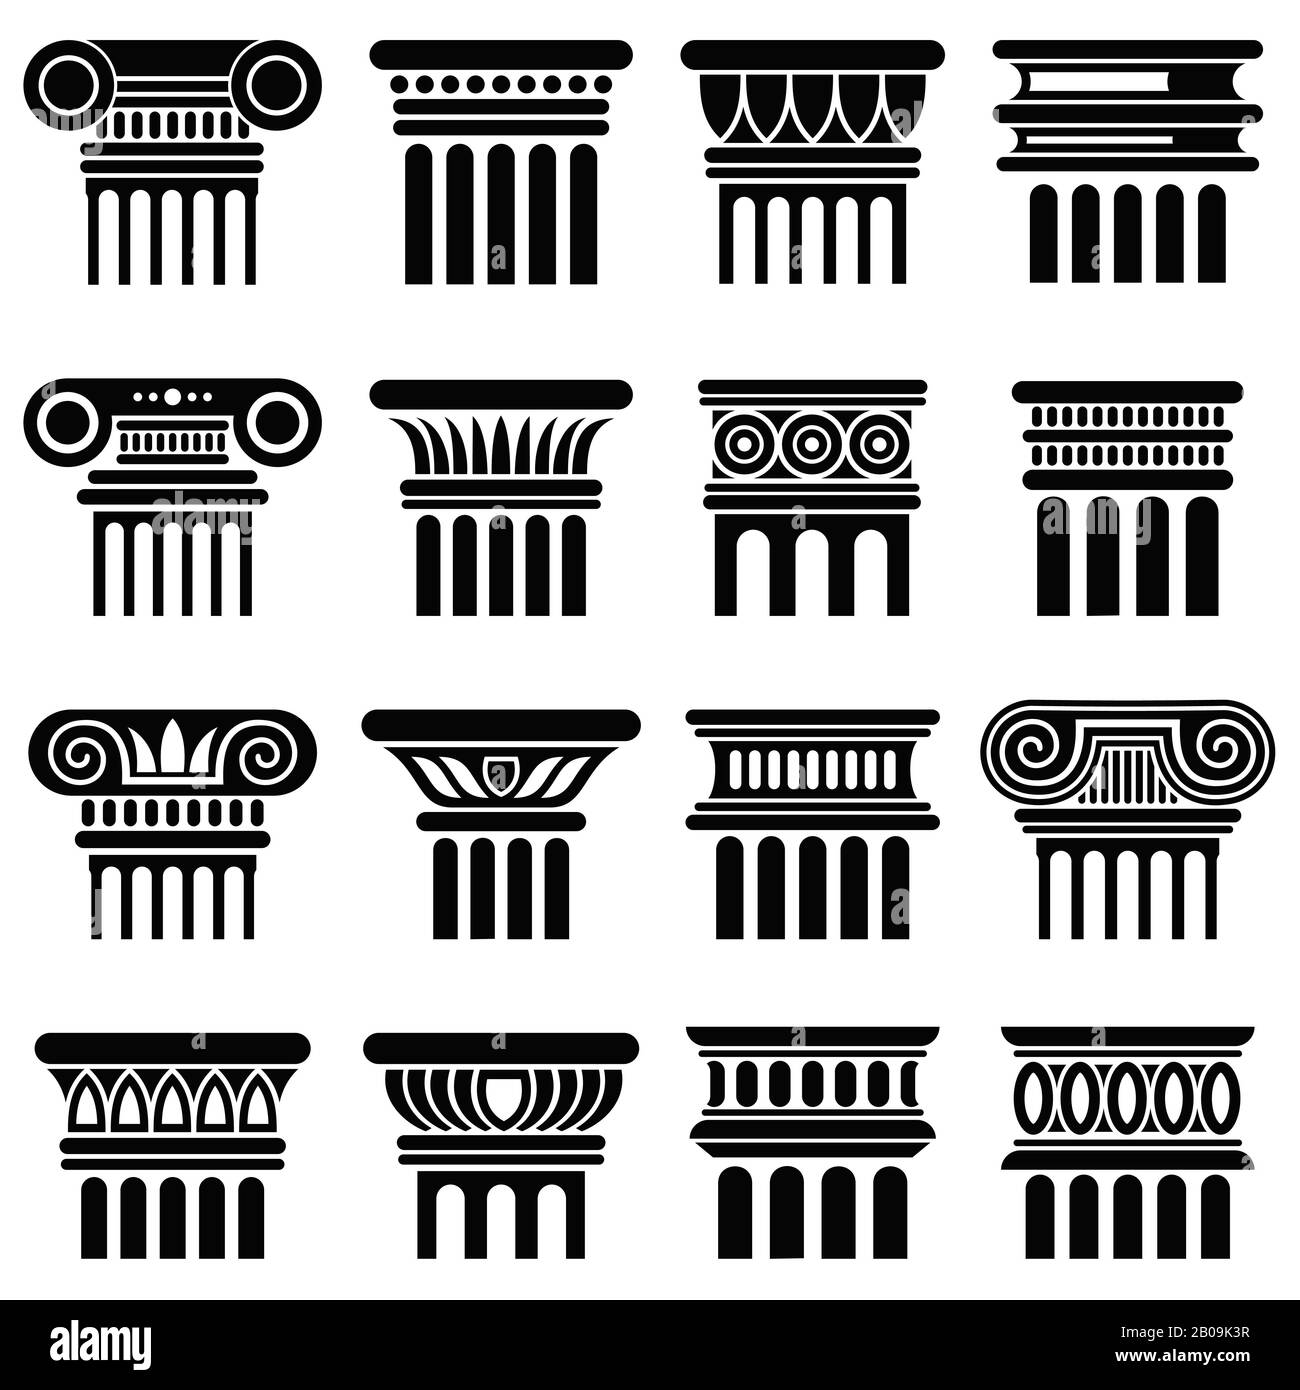 Säulenvektor-Ikonen der römischen Architektur. Schwarze Silhouettensäule, altklassische griechische Säulenabbildung Stock Vektor